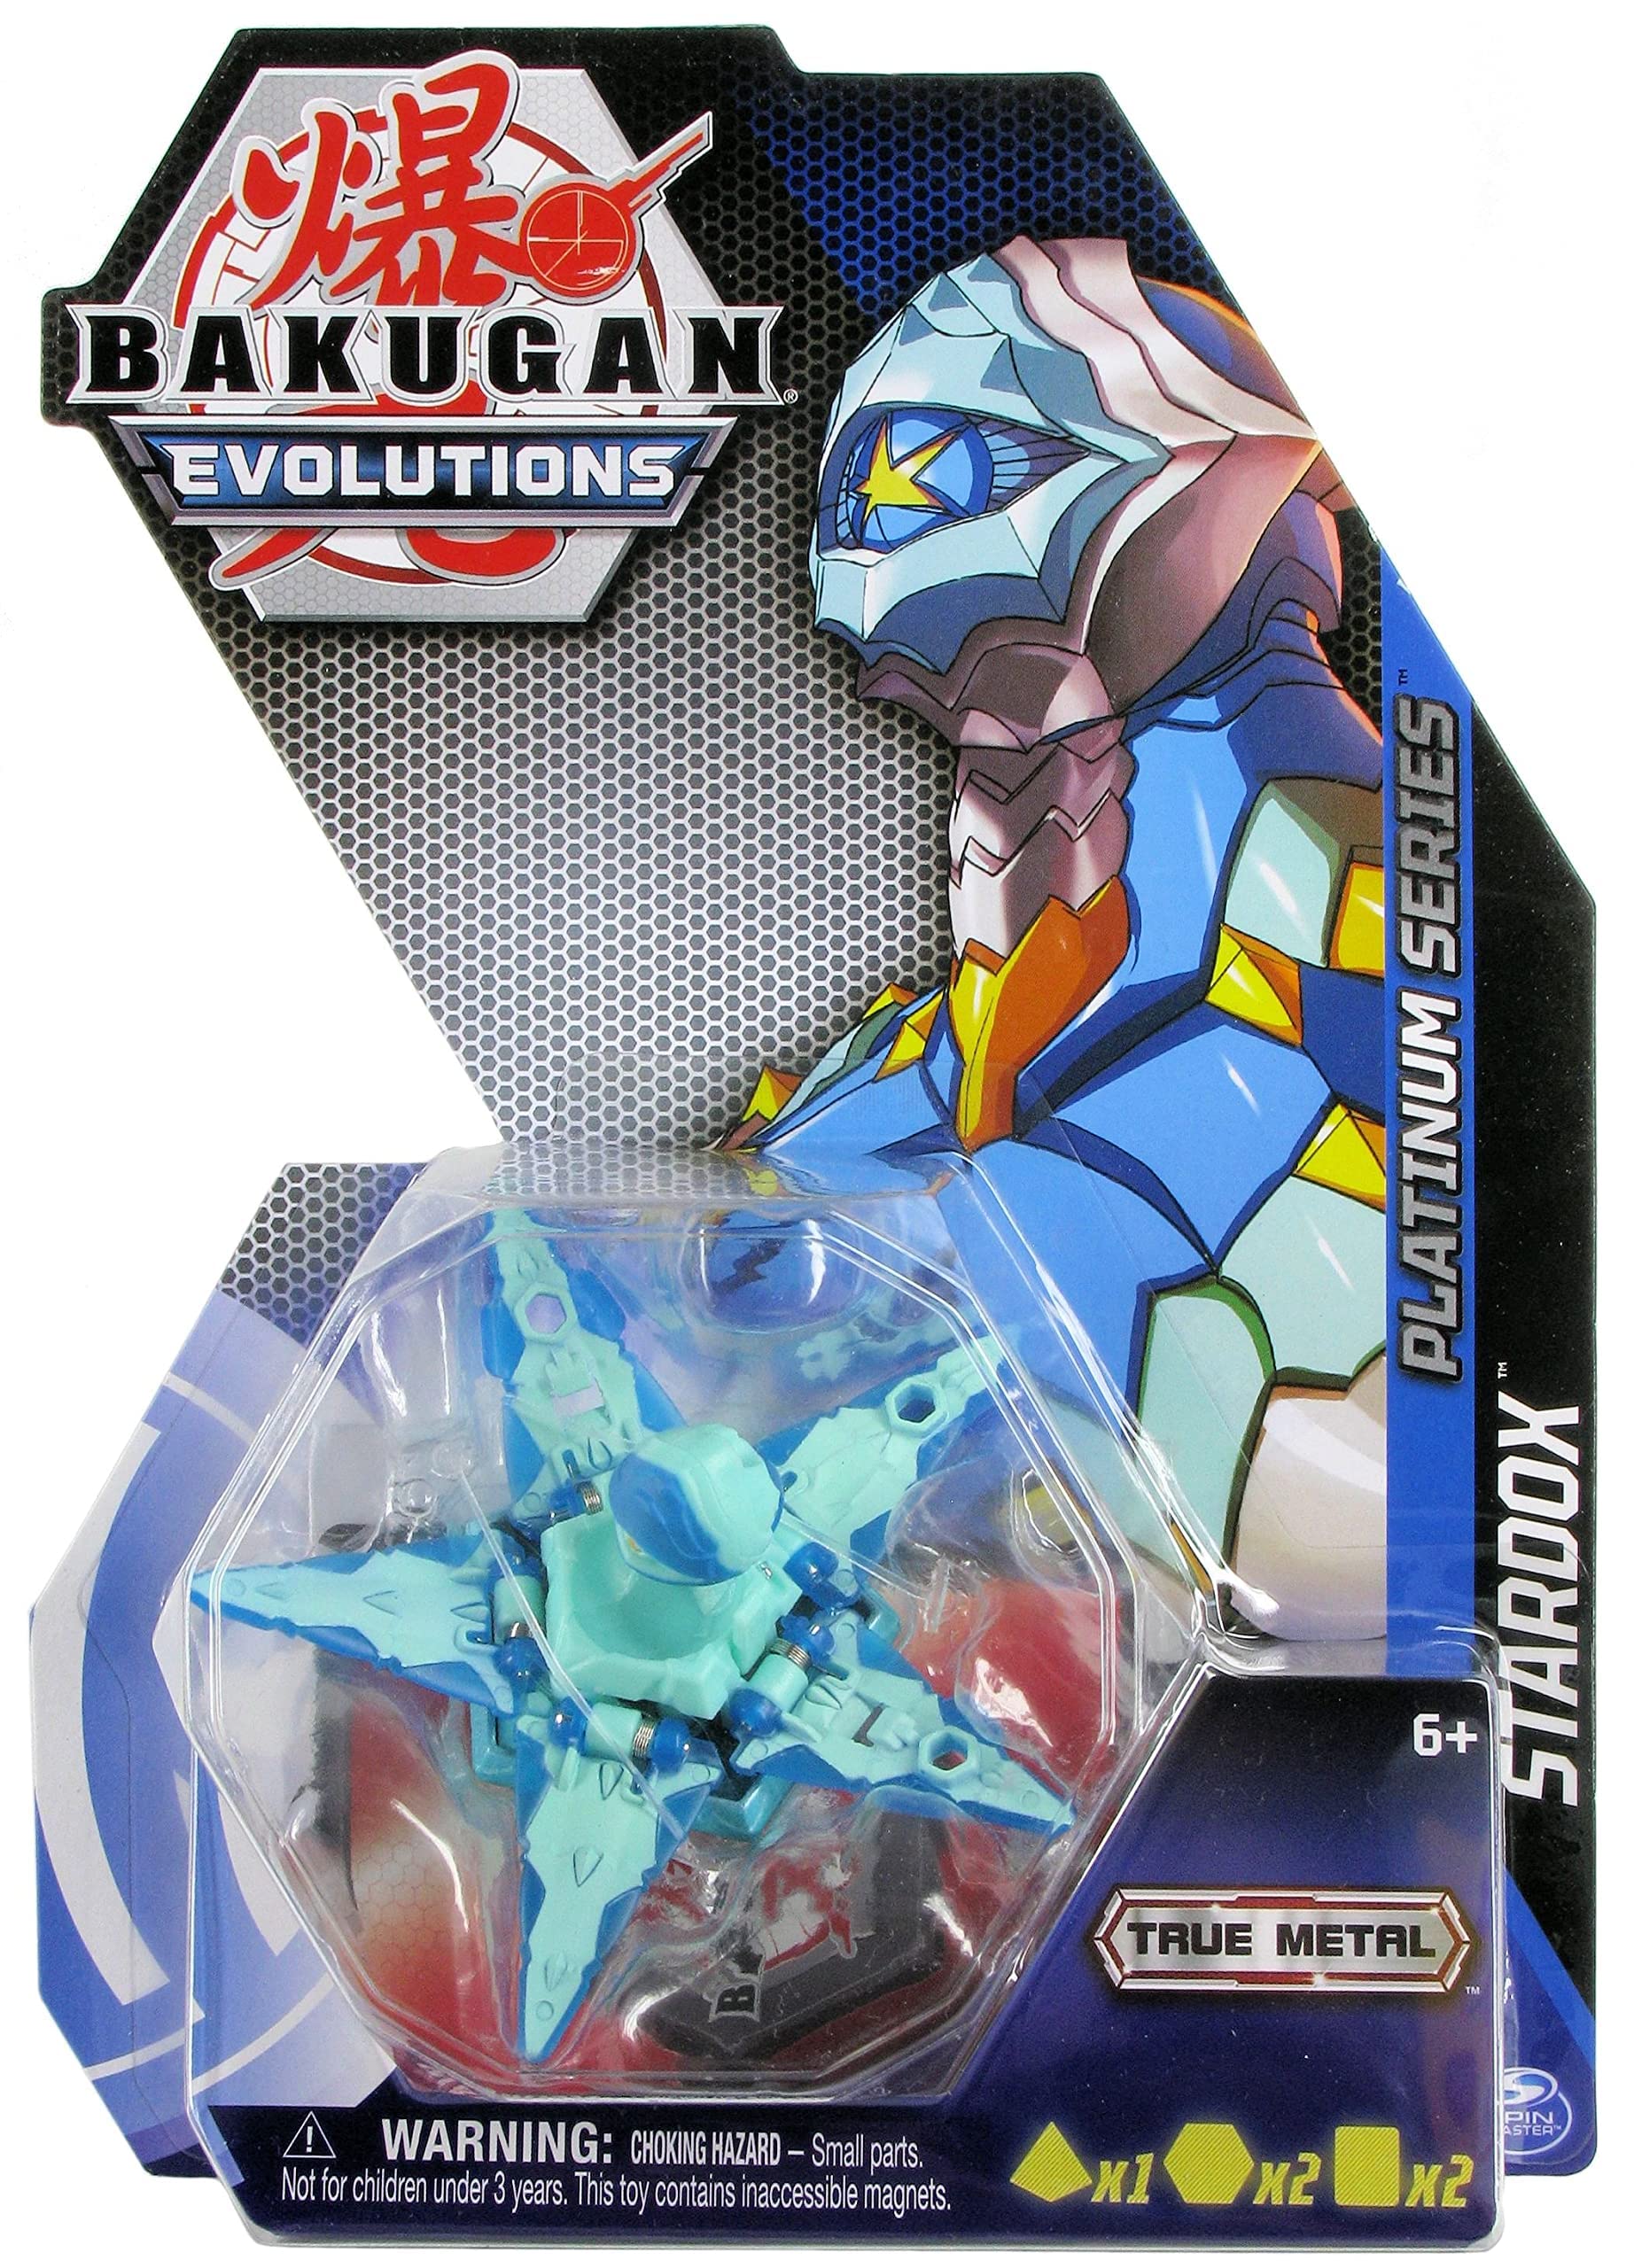 Bakugan: Geogan Rising - Bakugan Core Ball Pack S3 Assortment